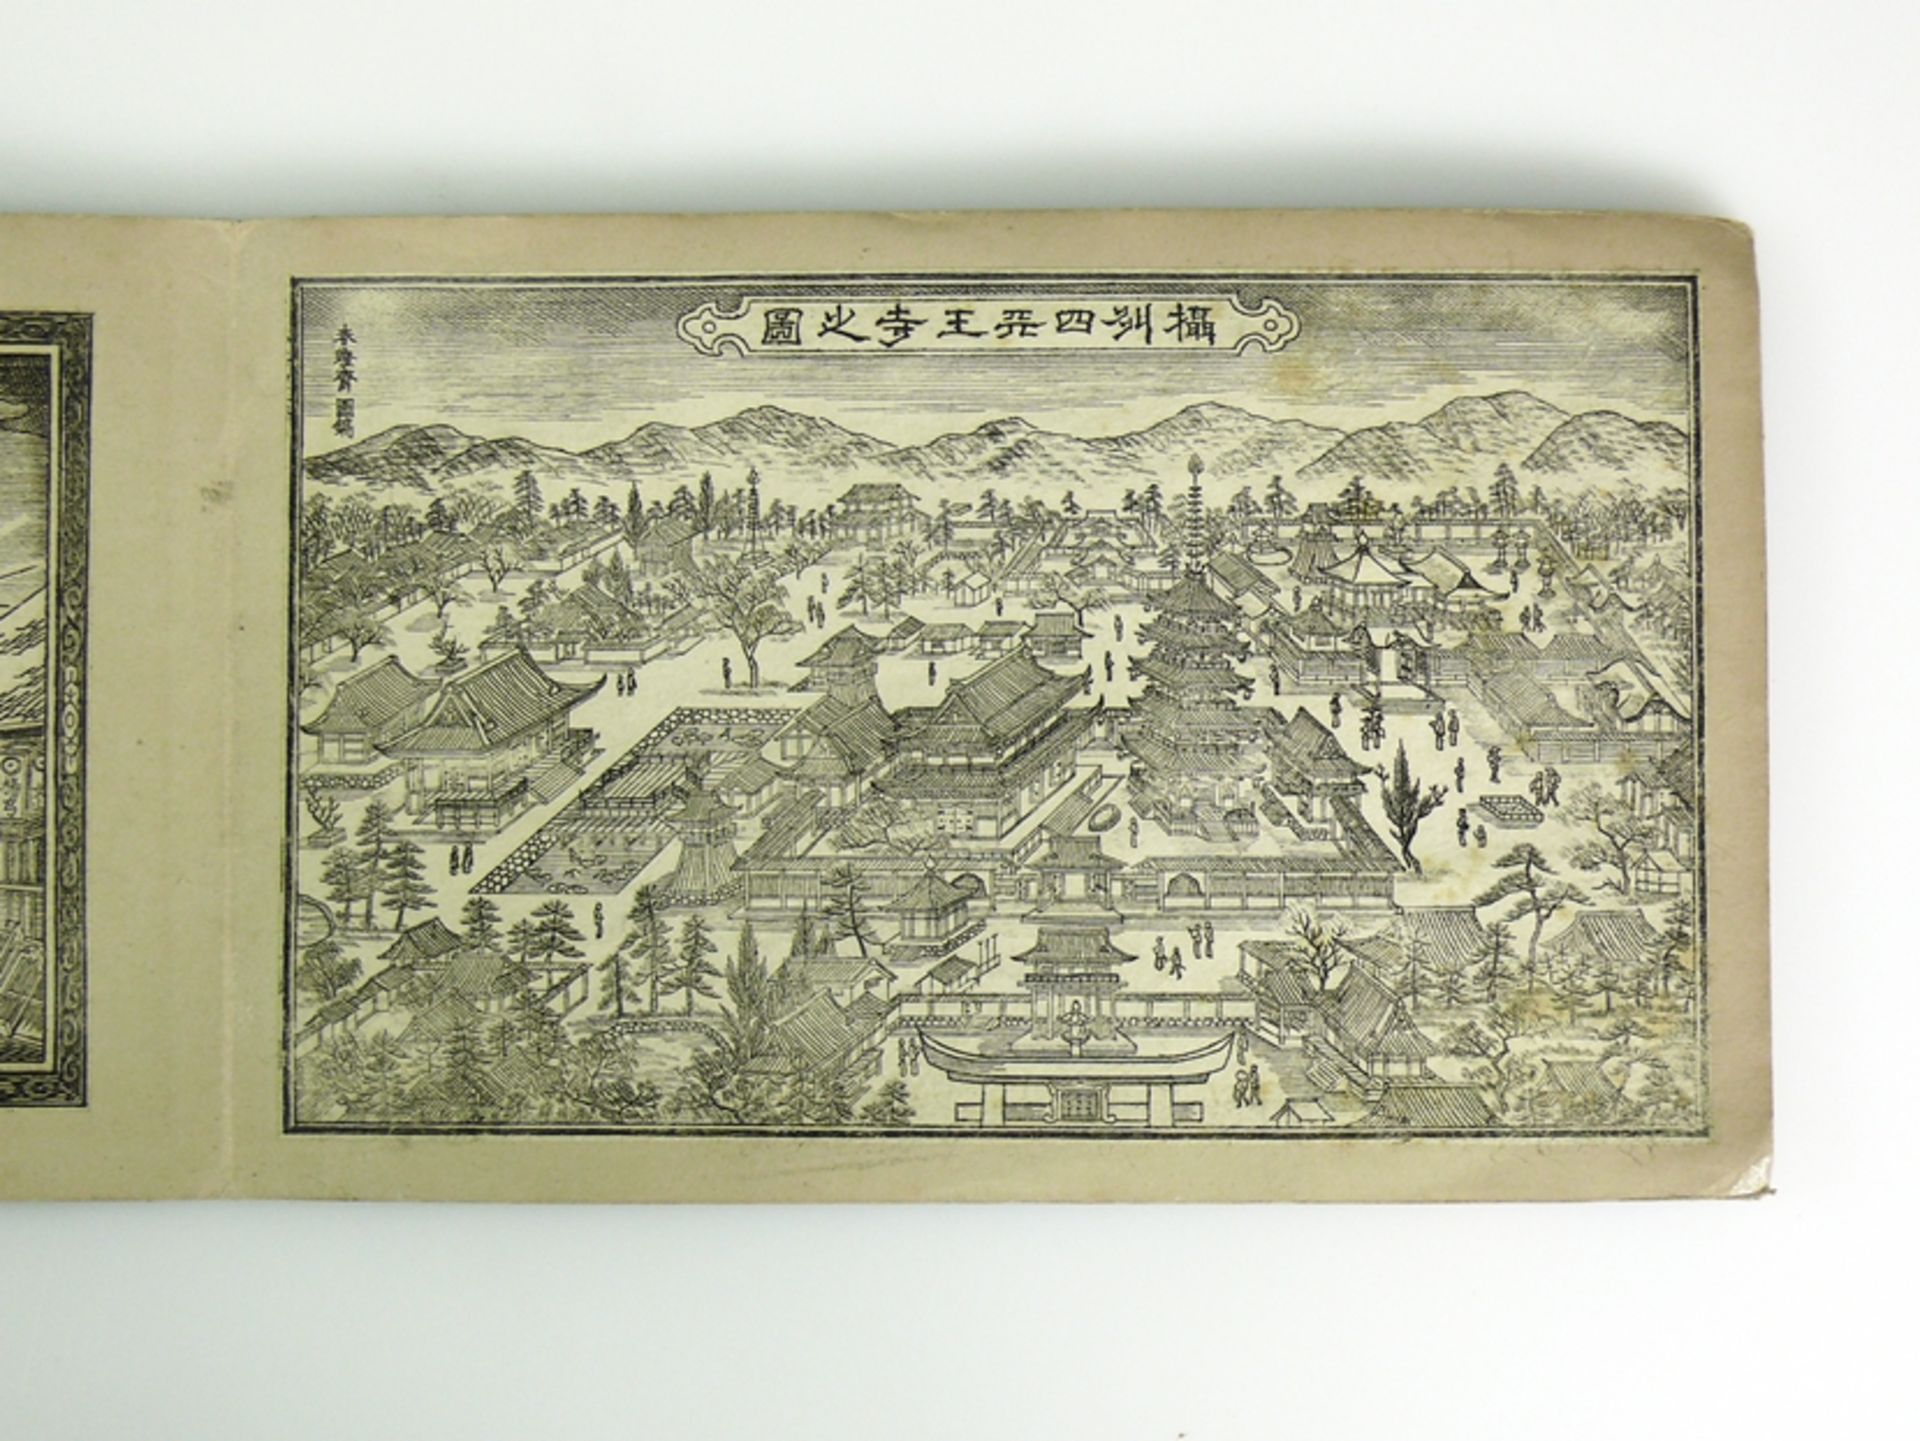 Kleines Buch (China, vor 1840, Qianlong-Daogung) - Image 21 of 22